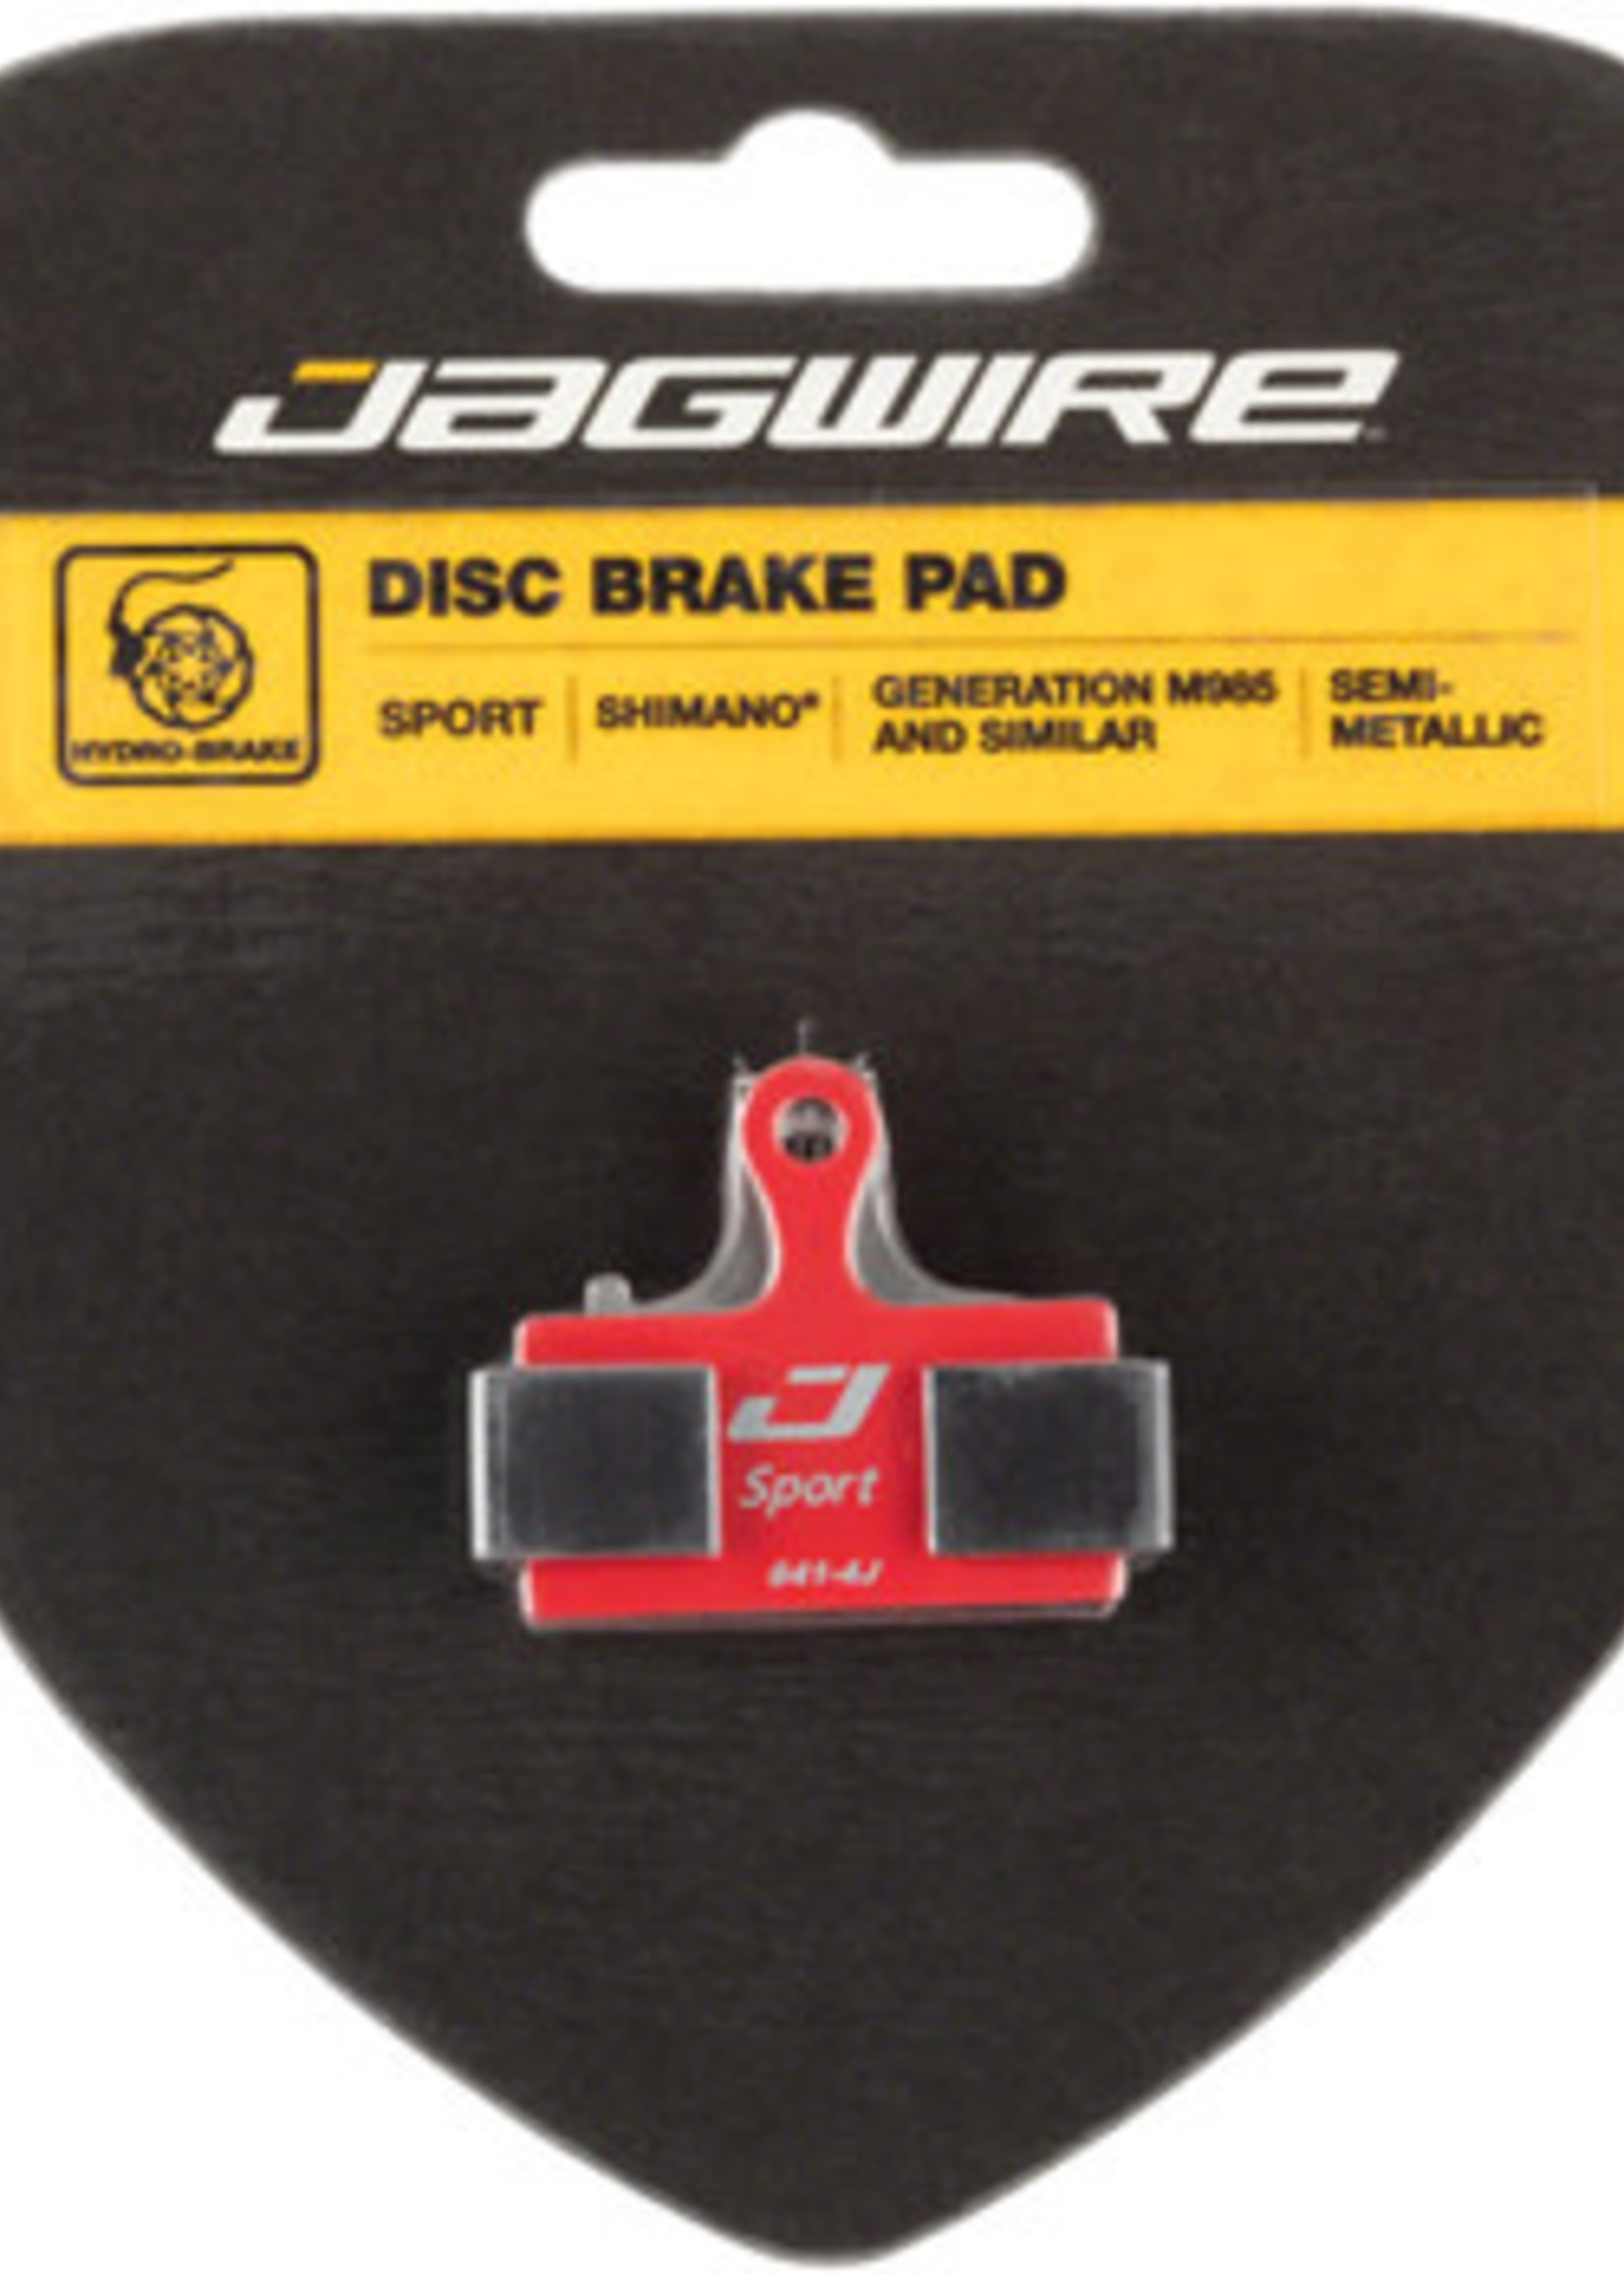 Jagwire Jagwire Sport Semi-Metallic Disc Brake Pads - For Shimano S700, M615, M6000, M785, M8000, M666, M675, M7000, M9000, M9020, M985, M987